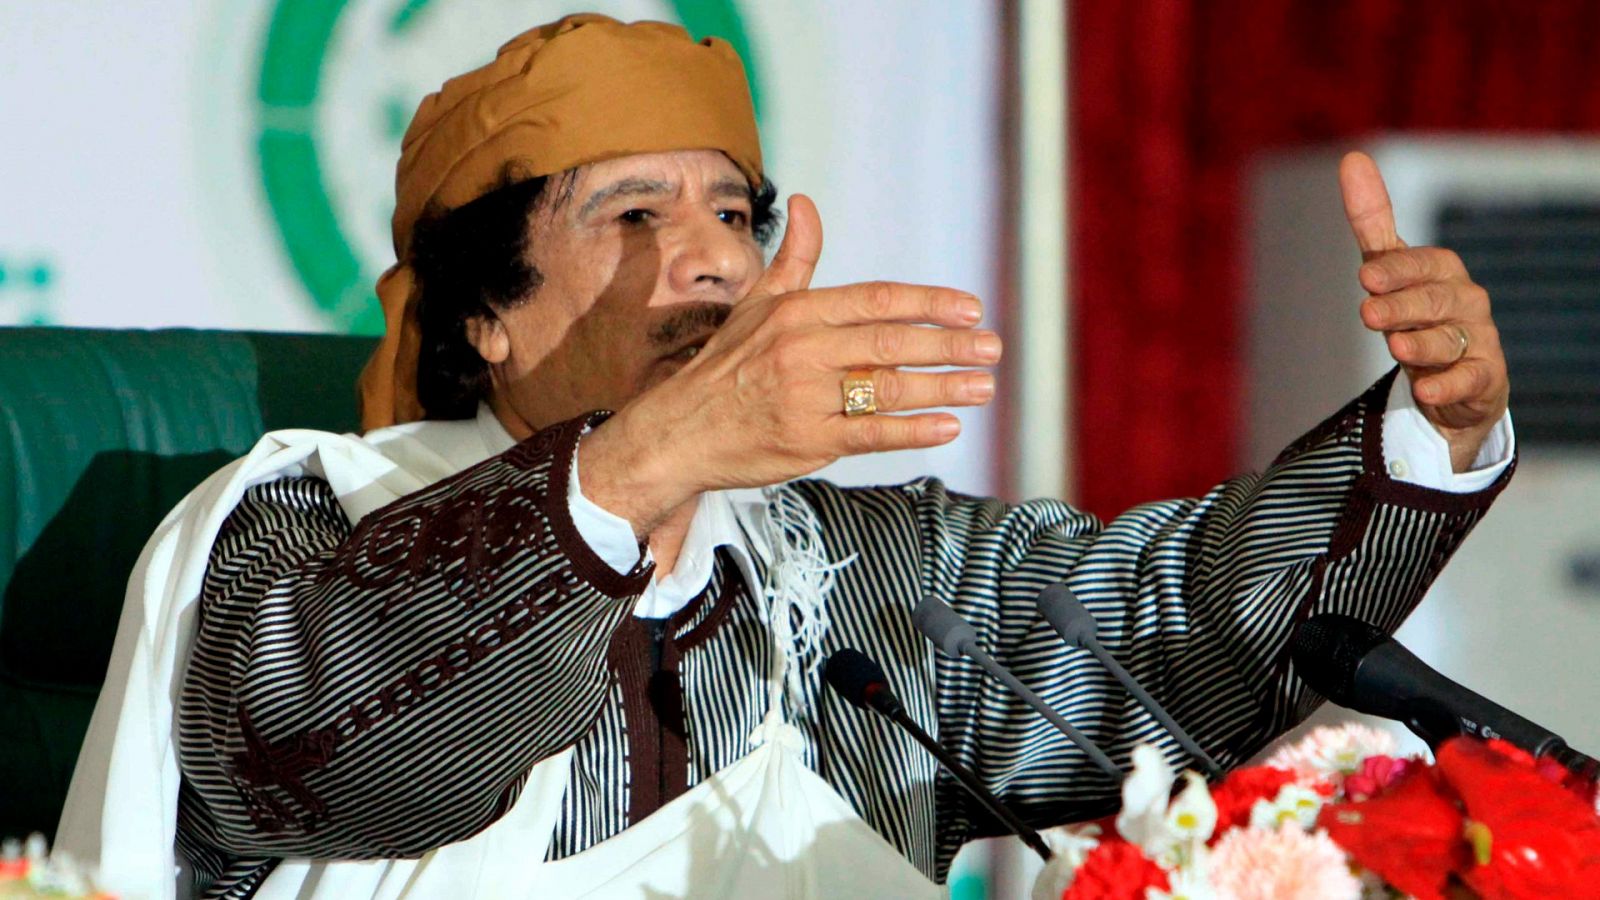 Libia, diez años después de la muerte de Gadafi - RTVE.es